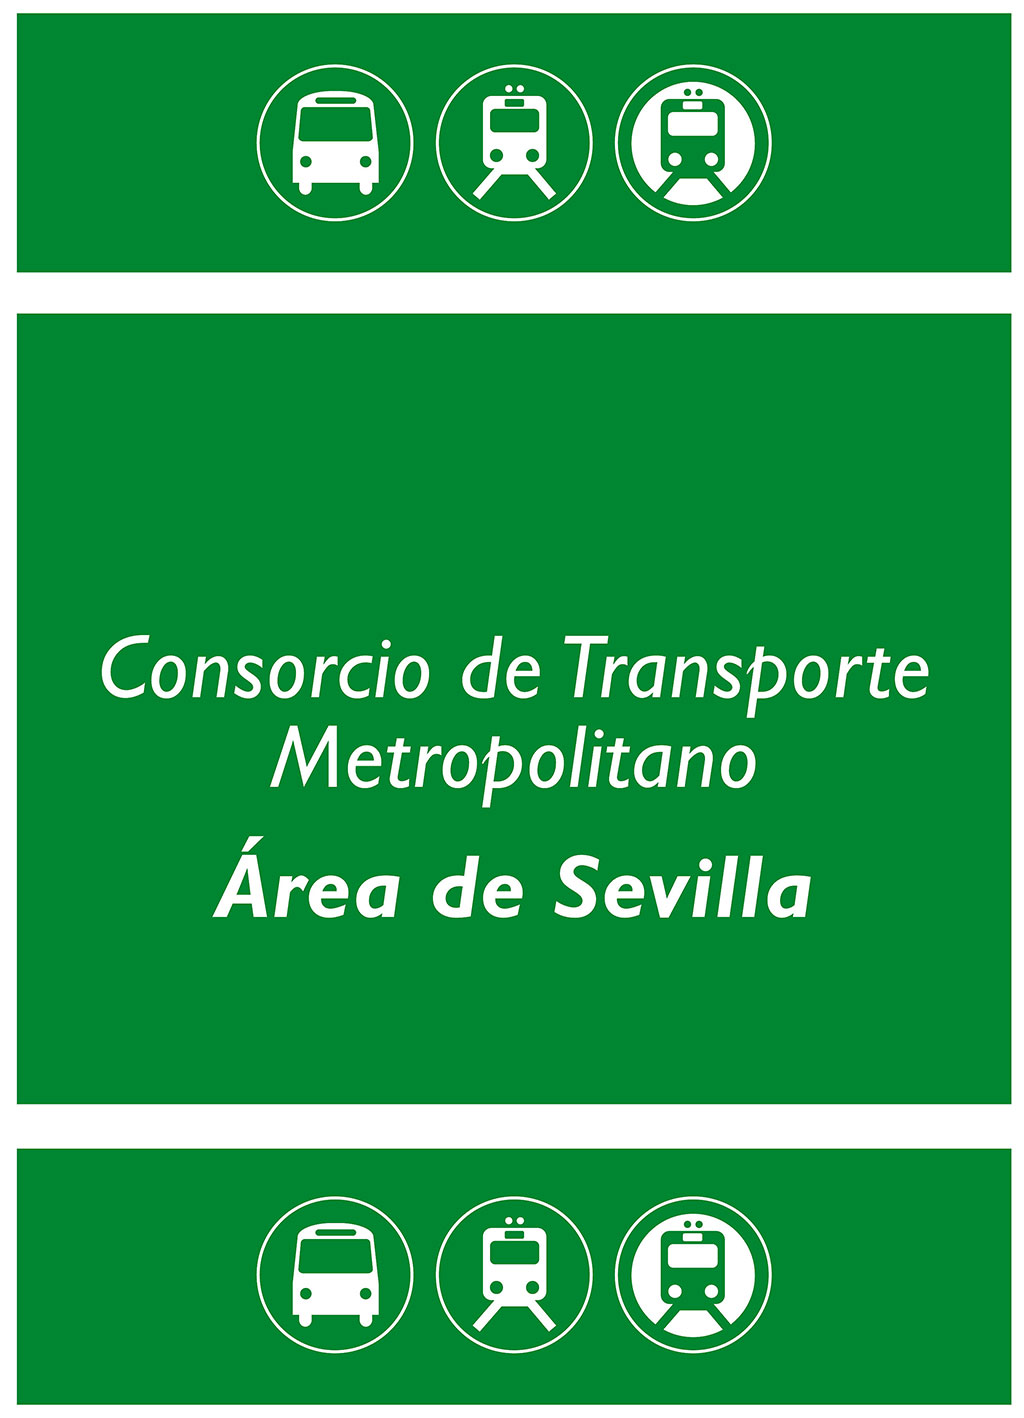 Estos son los horarios de los autobuses del Consorcio de Sevilla a partir del 1 de julio de 2022 